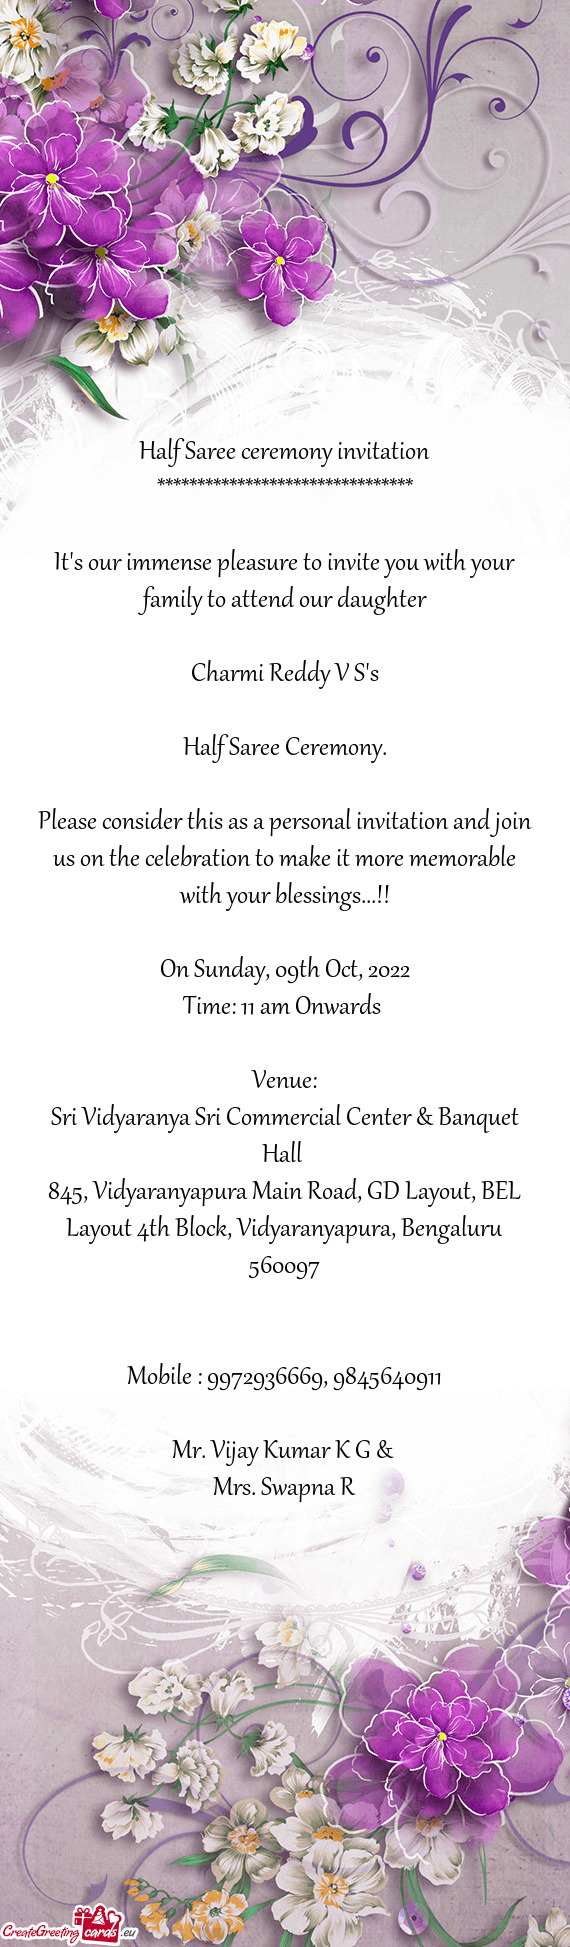 Sri Vidyaranya Sri Commercial Center & Banquet Hall